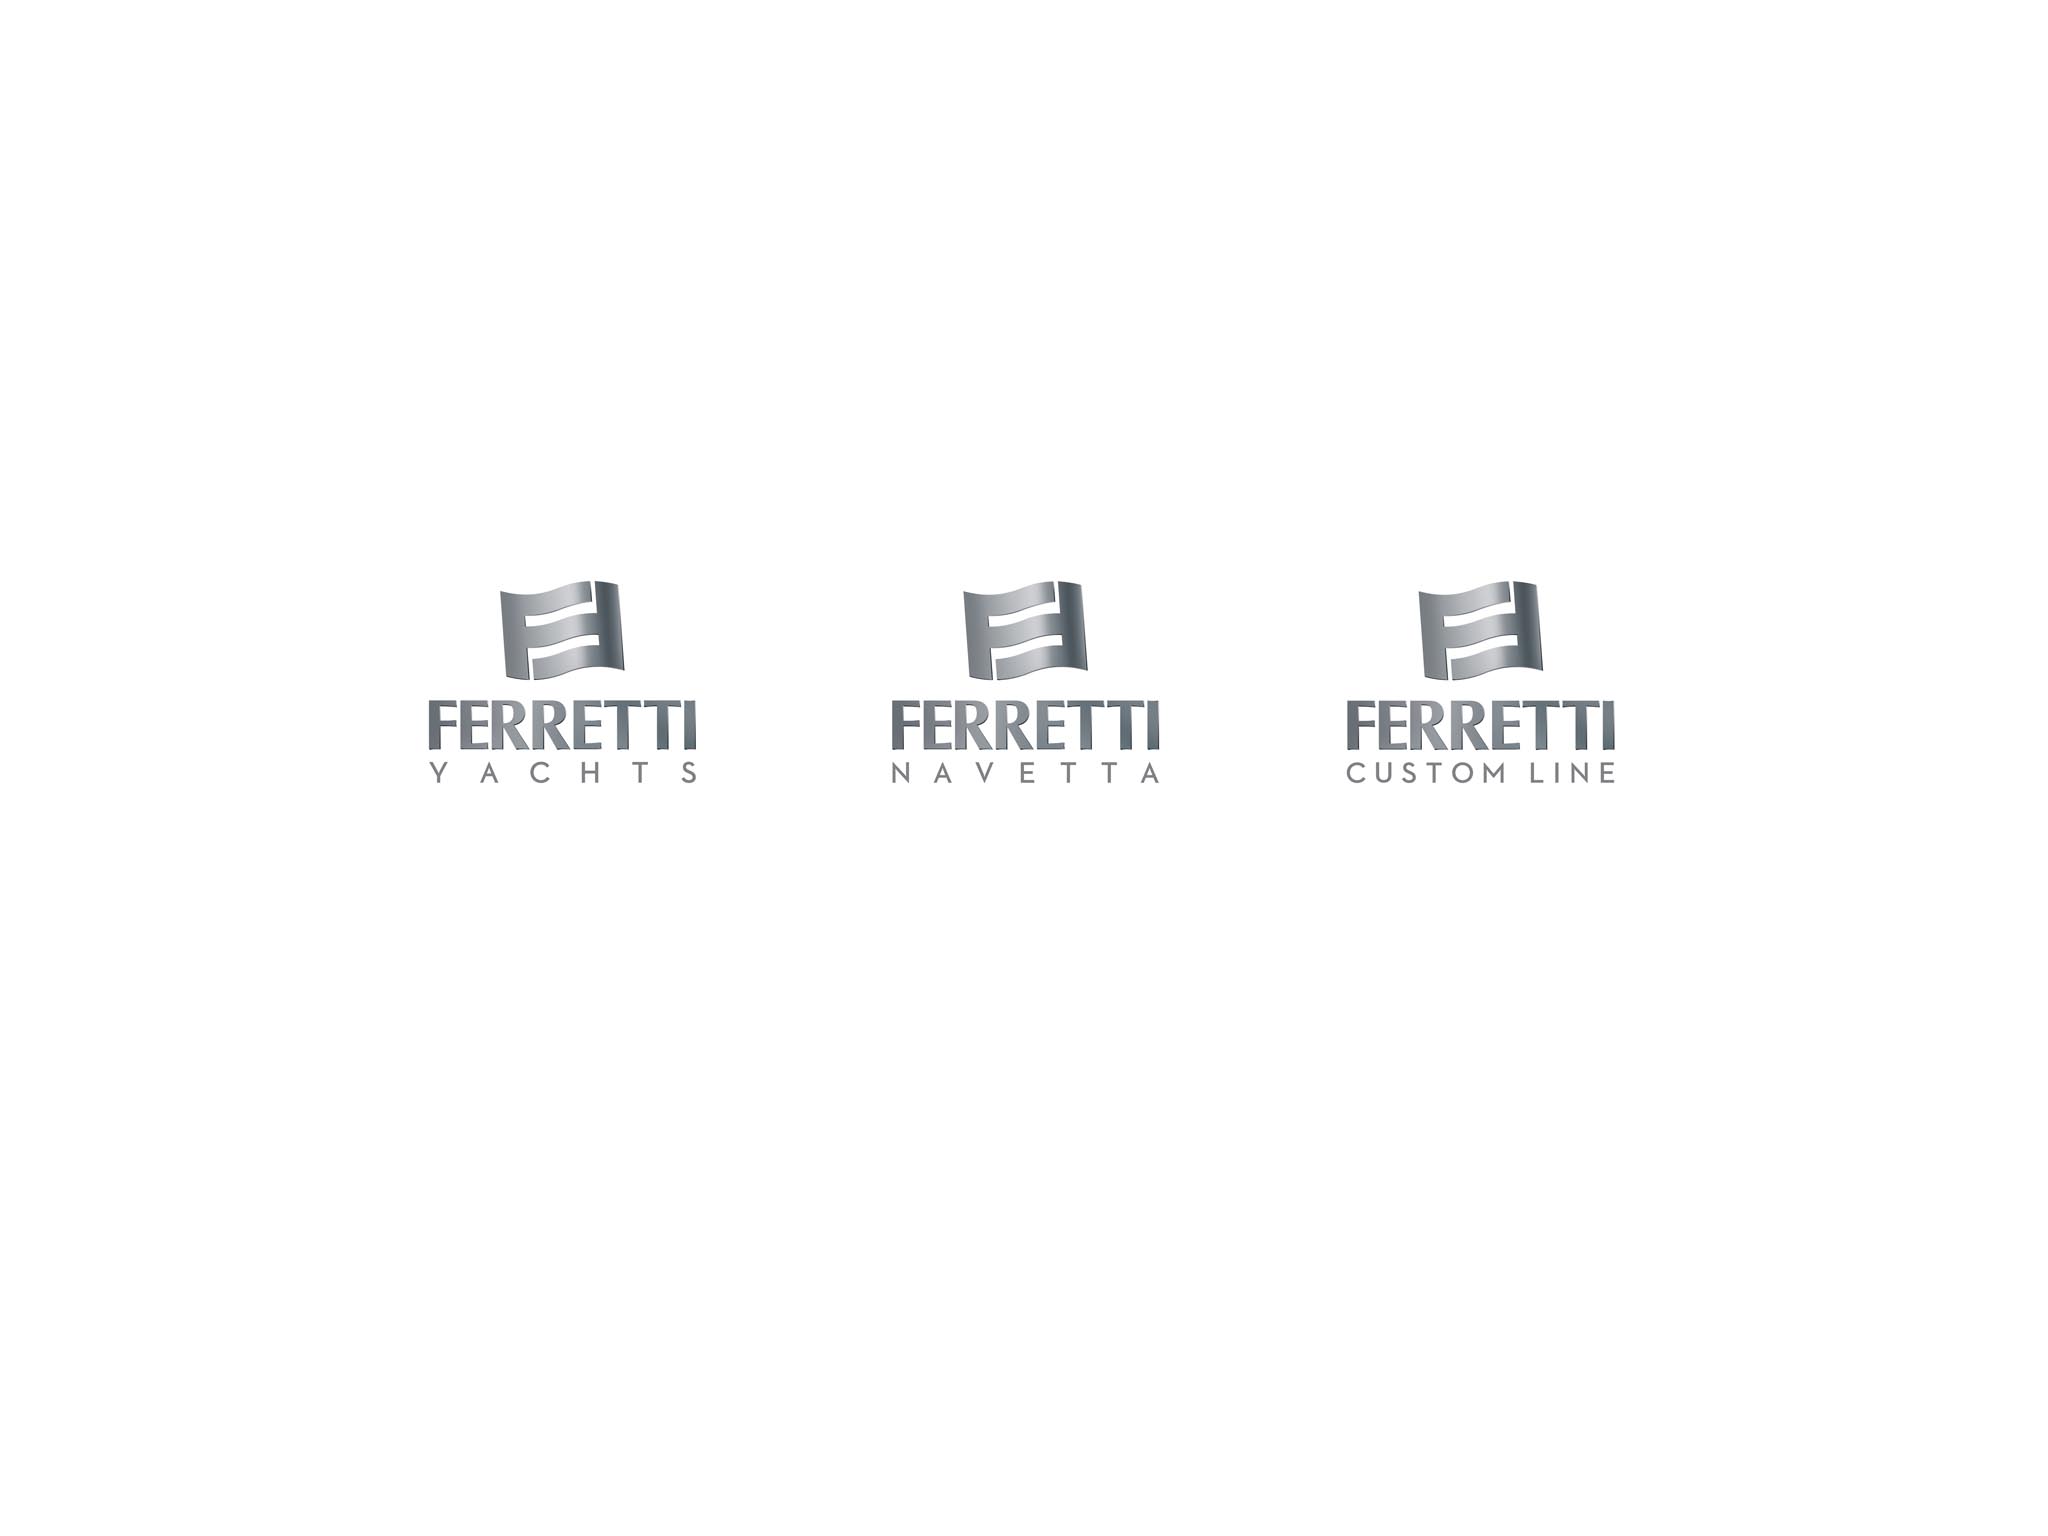 FERRETTI GROUP PRESENTS IN CANNES THE FERRETTI  BRAND’S NEW ARCHITECTURE. THE BRAND NOW INCLUDES THREE PRODUCT LINES: FERRETTI YACHTS, FERRETTI CUSTOM LINE AND FERRETTI NAVETTA.